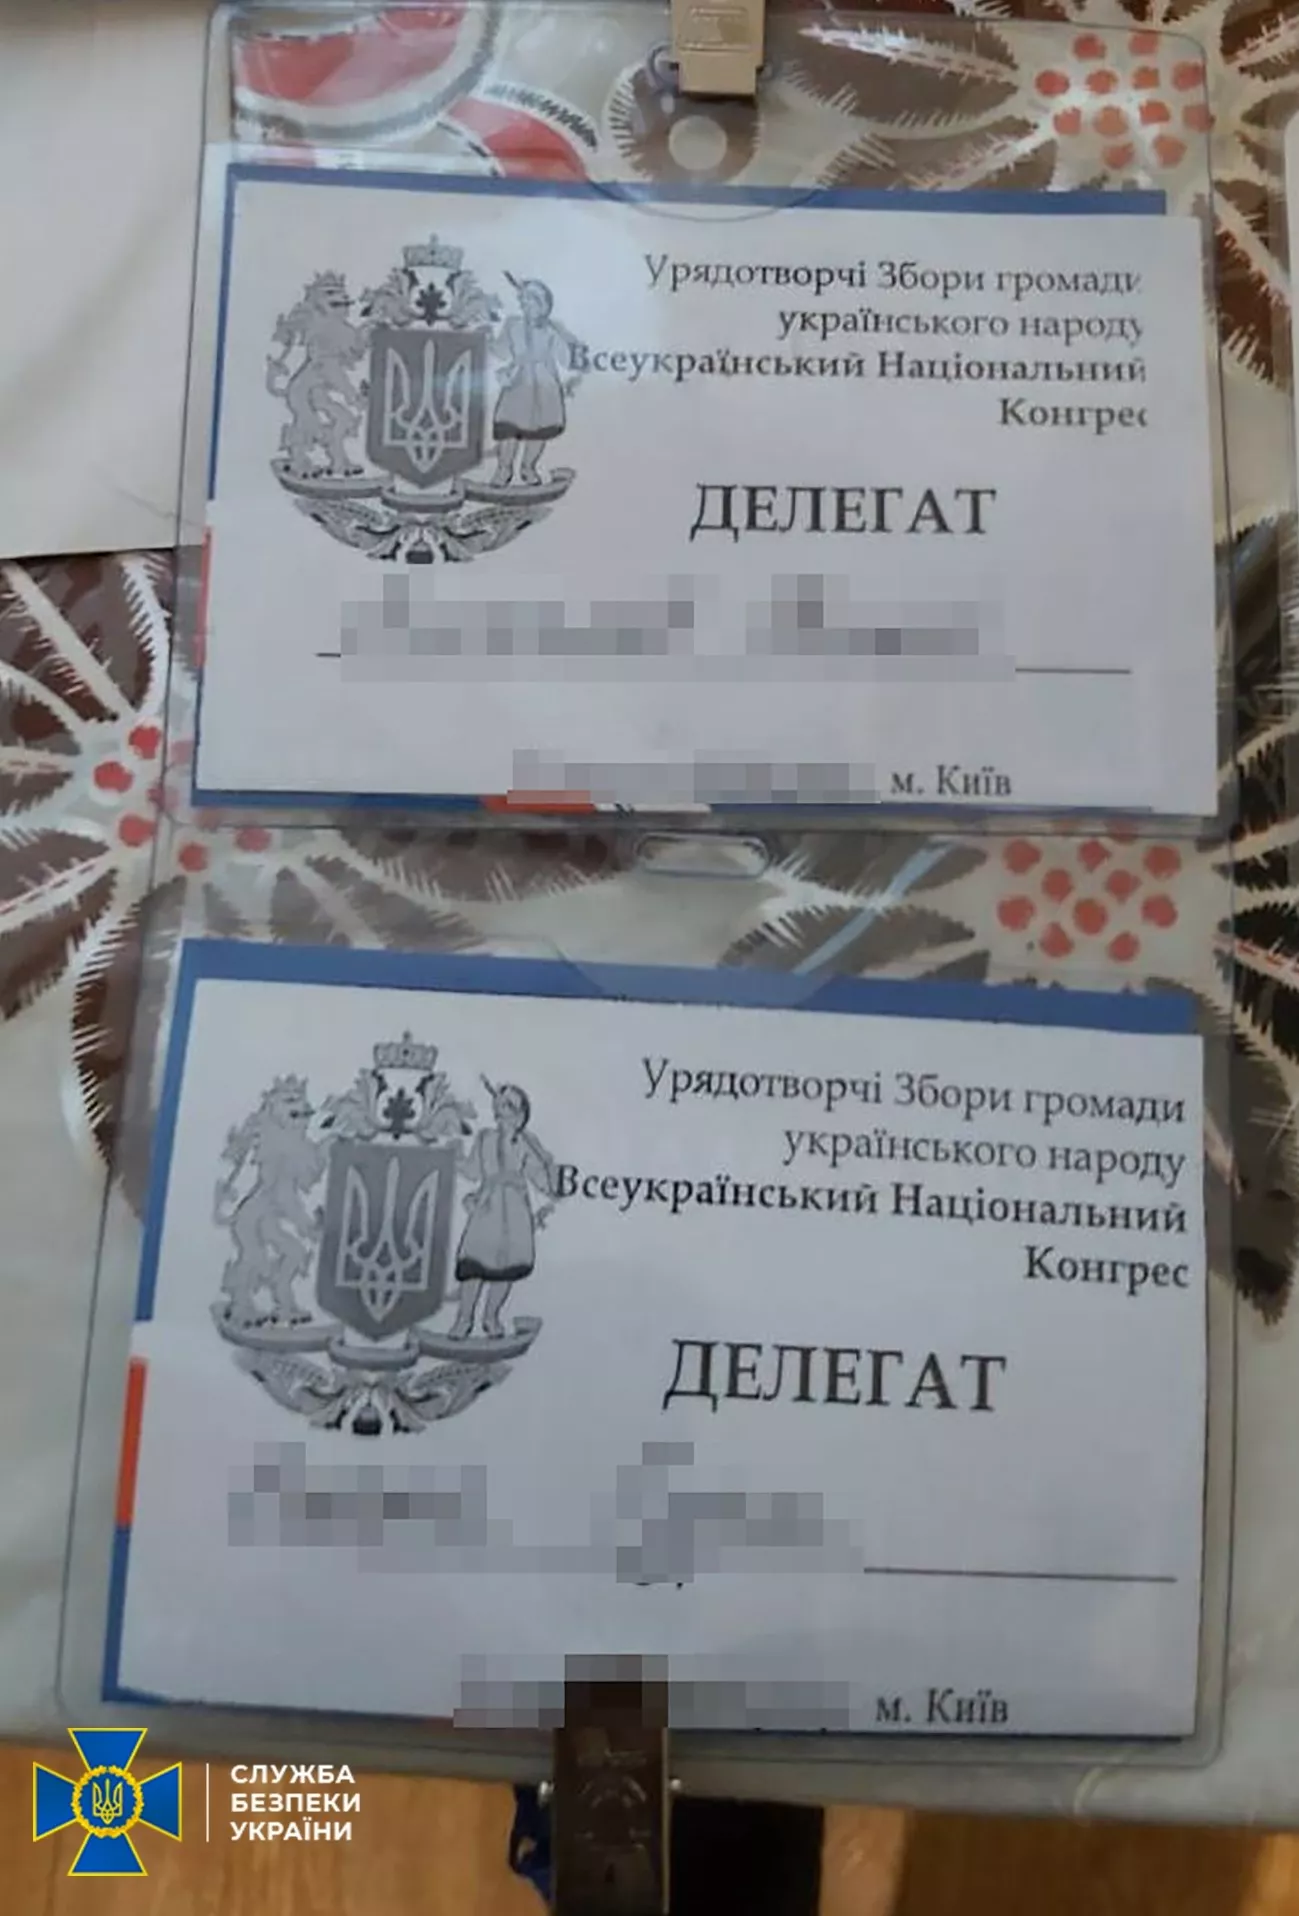 Фейковые удостоверения злоумышленников. Фото: ssu.gov.ua